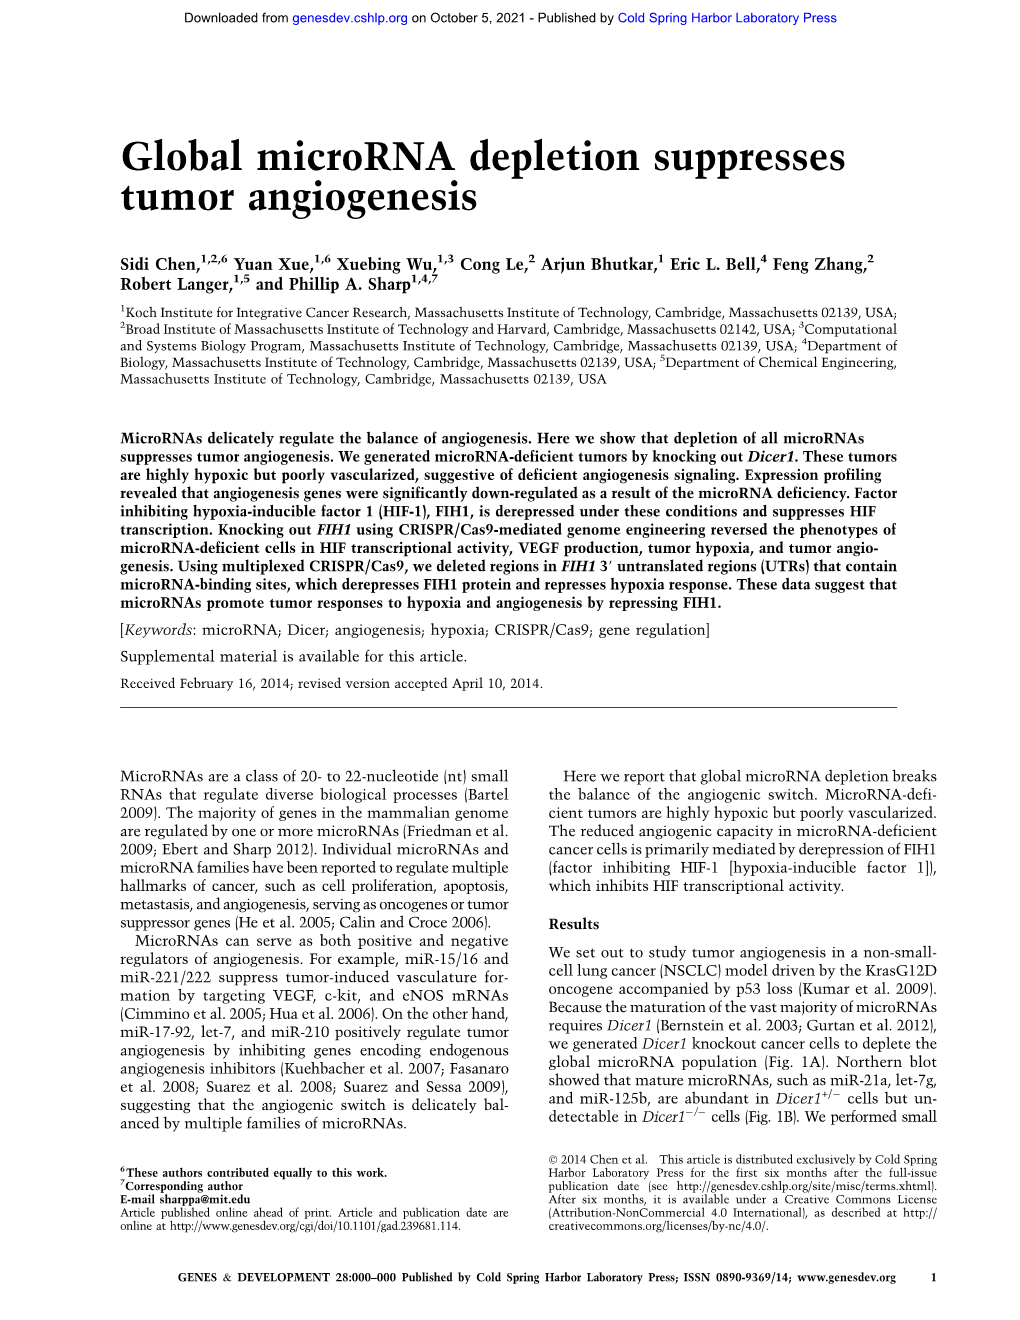 Global Microrna Depletion Suppresses Tumor Angiogenesis